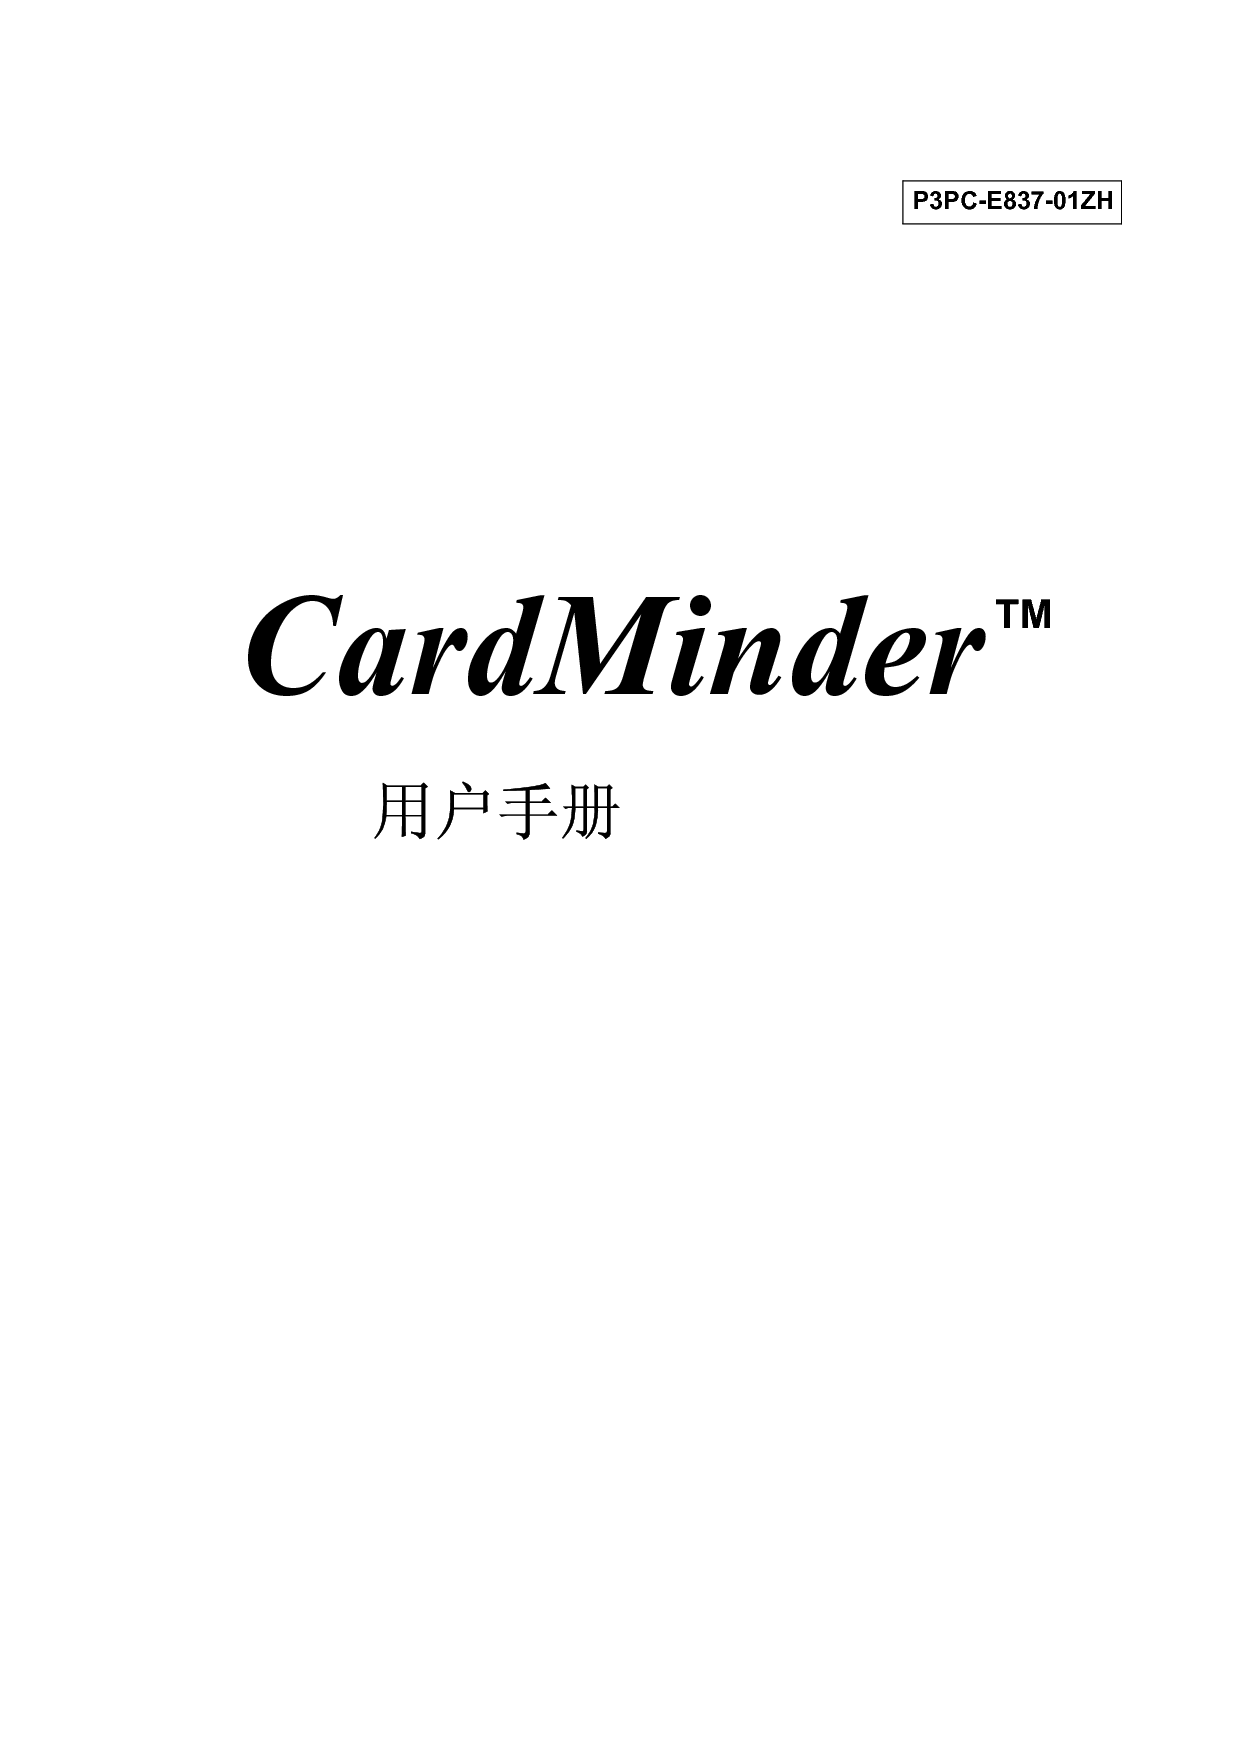 富士通 Fujitsu CardMinder 2005 用户手册 封面